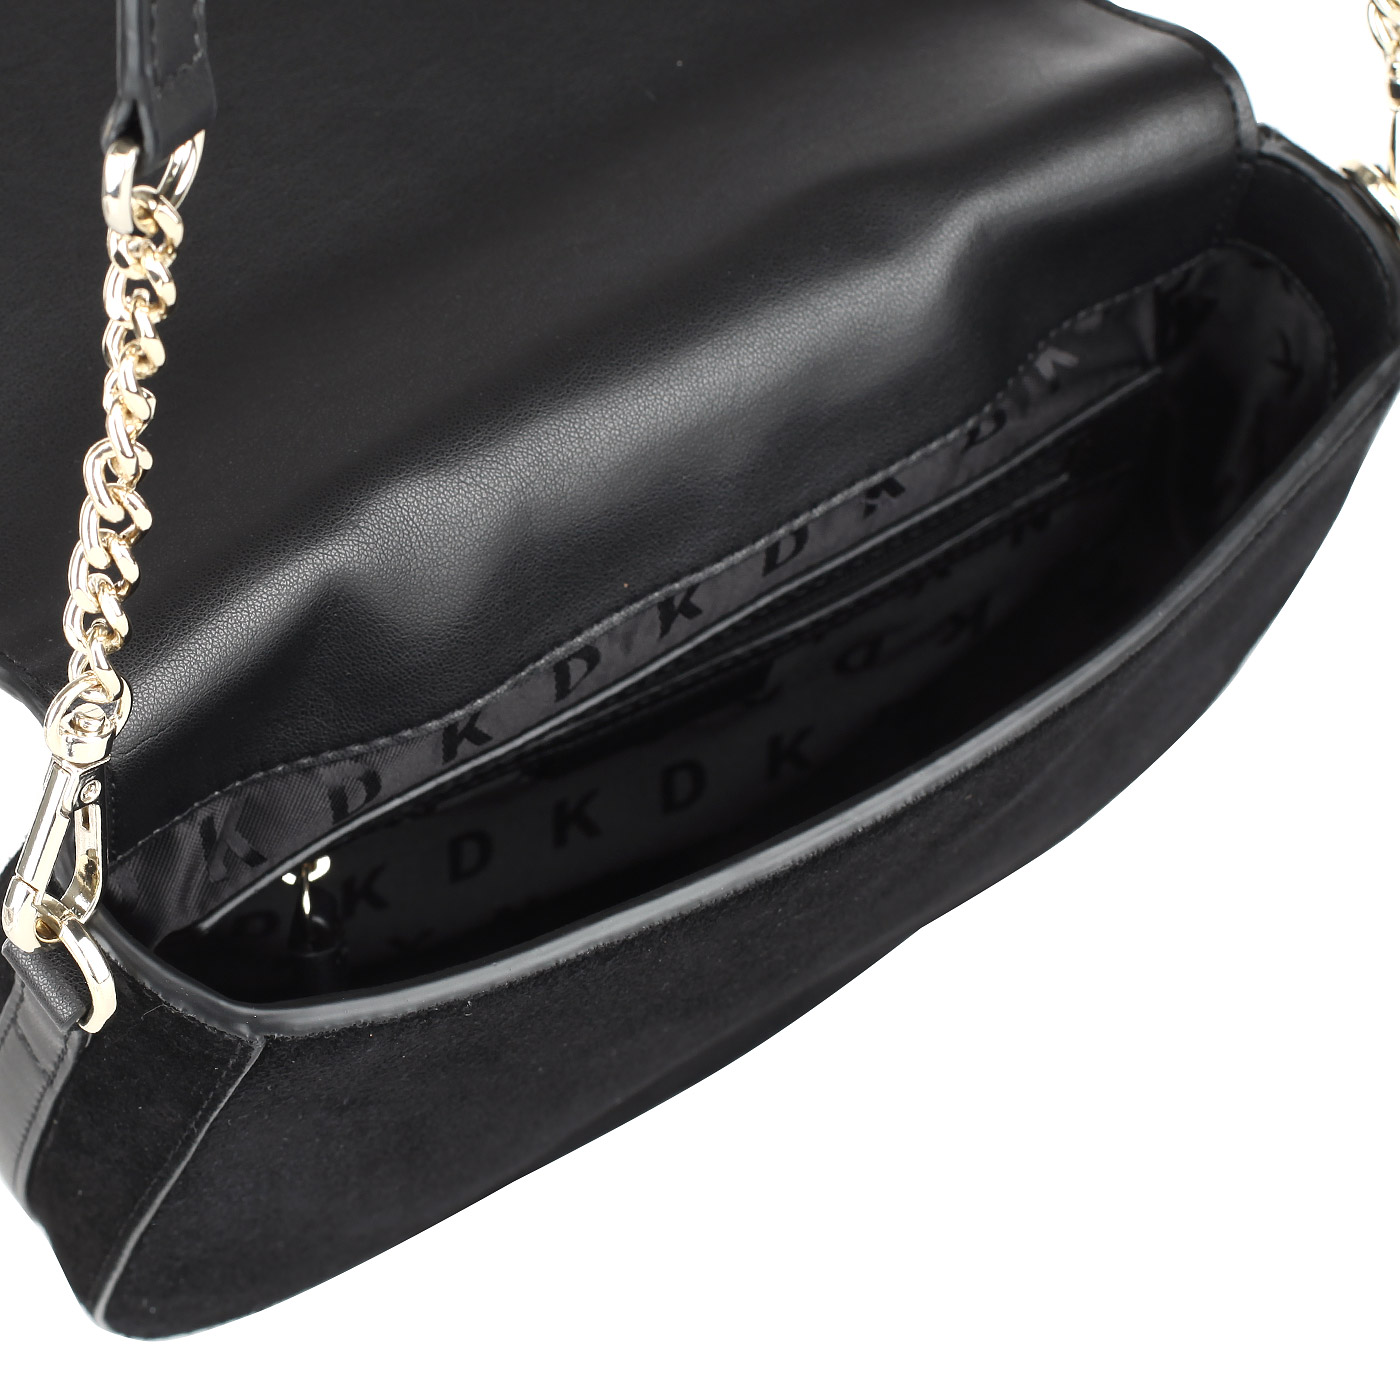 Женская замшевая сумка кросс-боди с откидным клапаном DKNY Suede